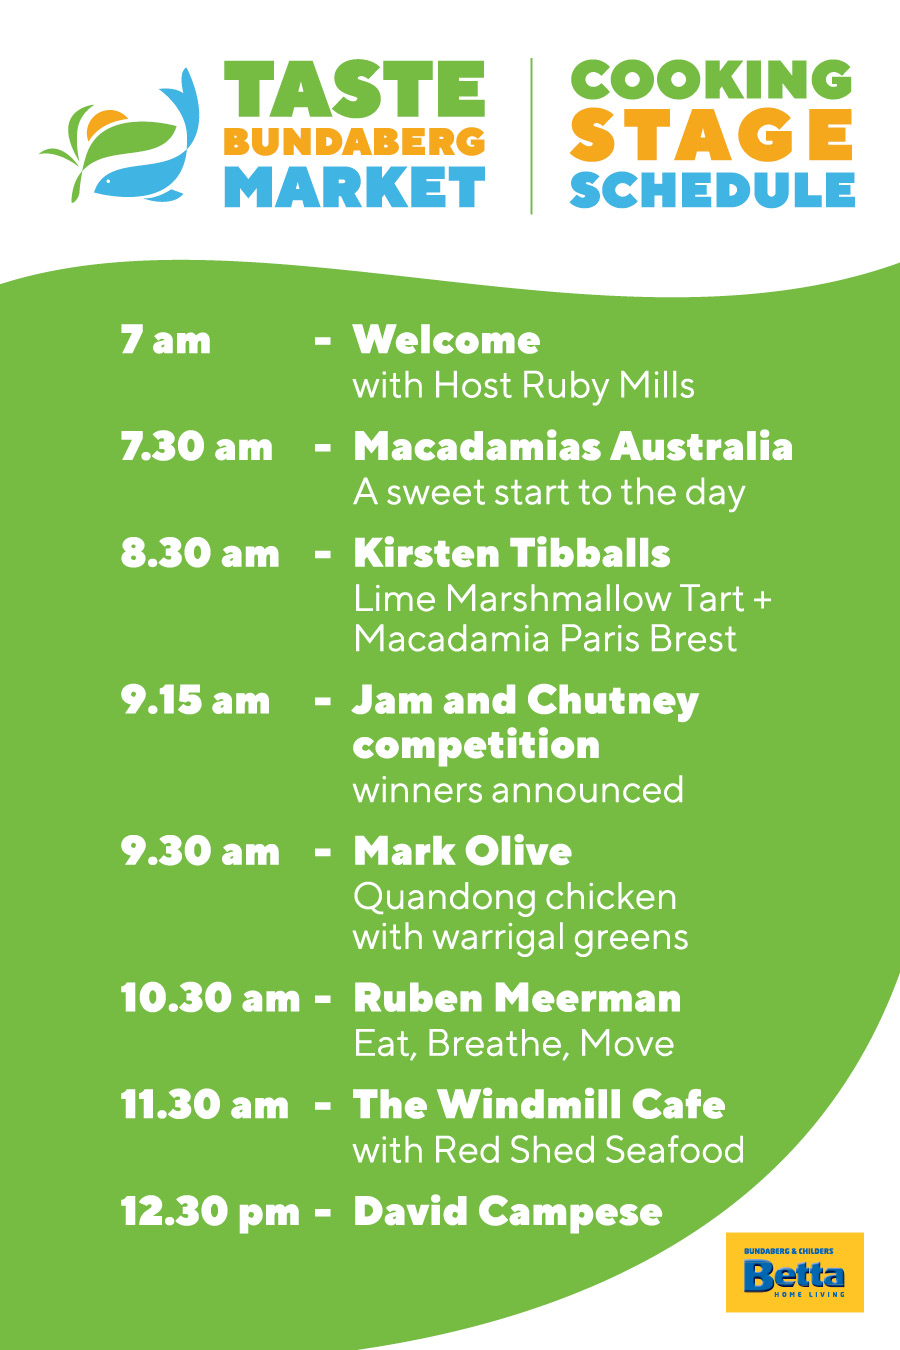 Taste Bundaberg Market Stage Schedule